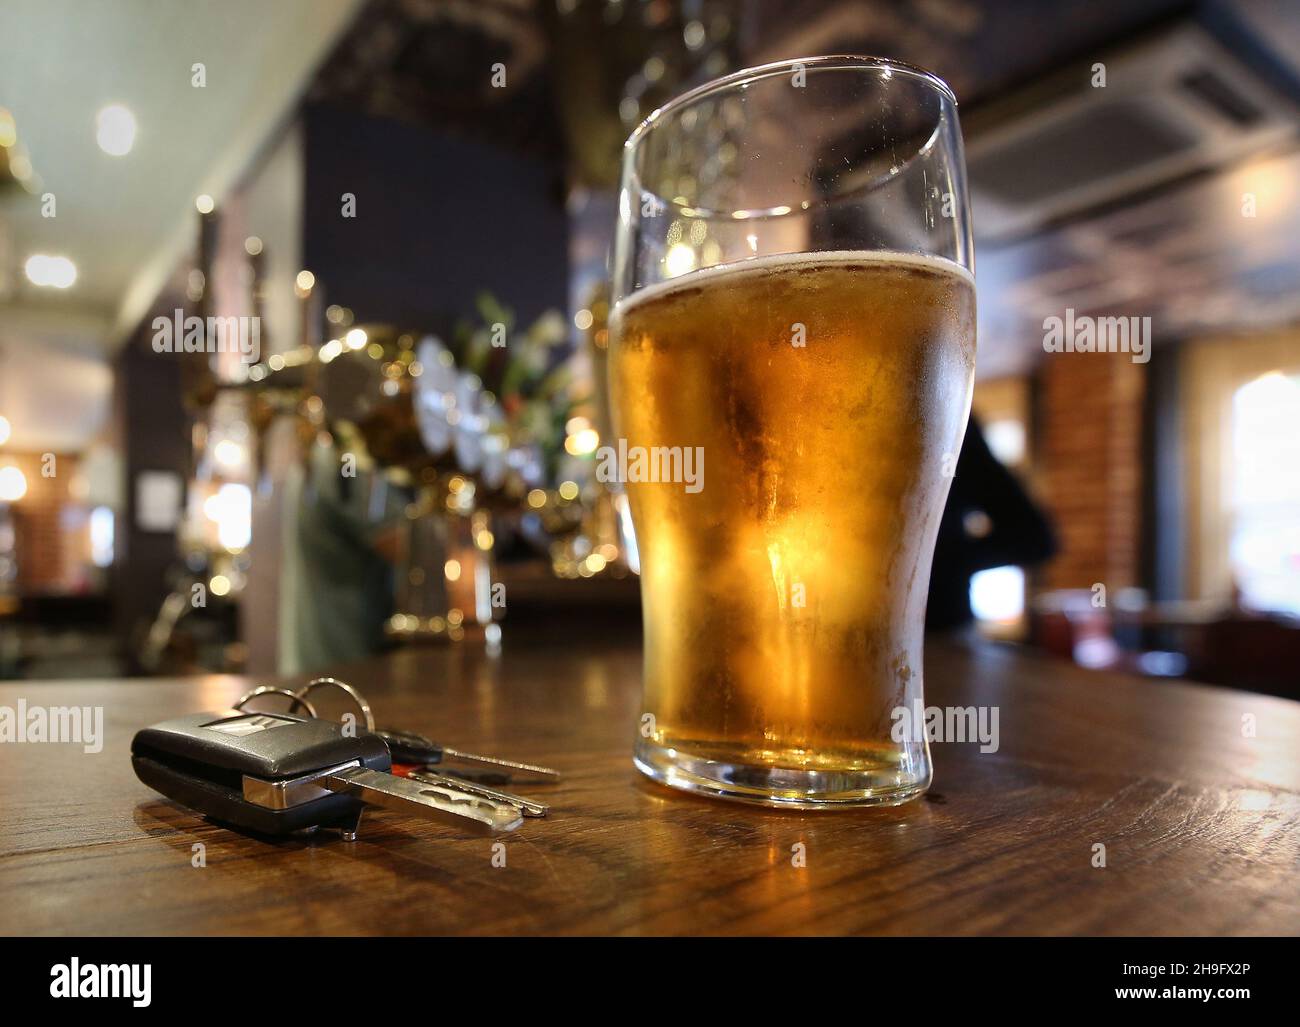 Aktenfoto vom 26/11/14 von einem Pint Bier und einem Satz Autoschlüssel an einer Bar in einem Pub. Die Hälfte der Trinker glaubt, dass sie trotz Überschreitung der gesetzlichen Alkoholgrenze sicher fahren können, so eine neue Studie. Ausgabedatum: Dienstag, 7. Dezember 2021. Stockfoto